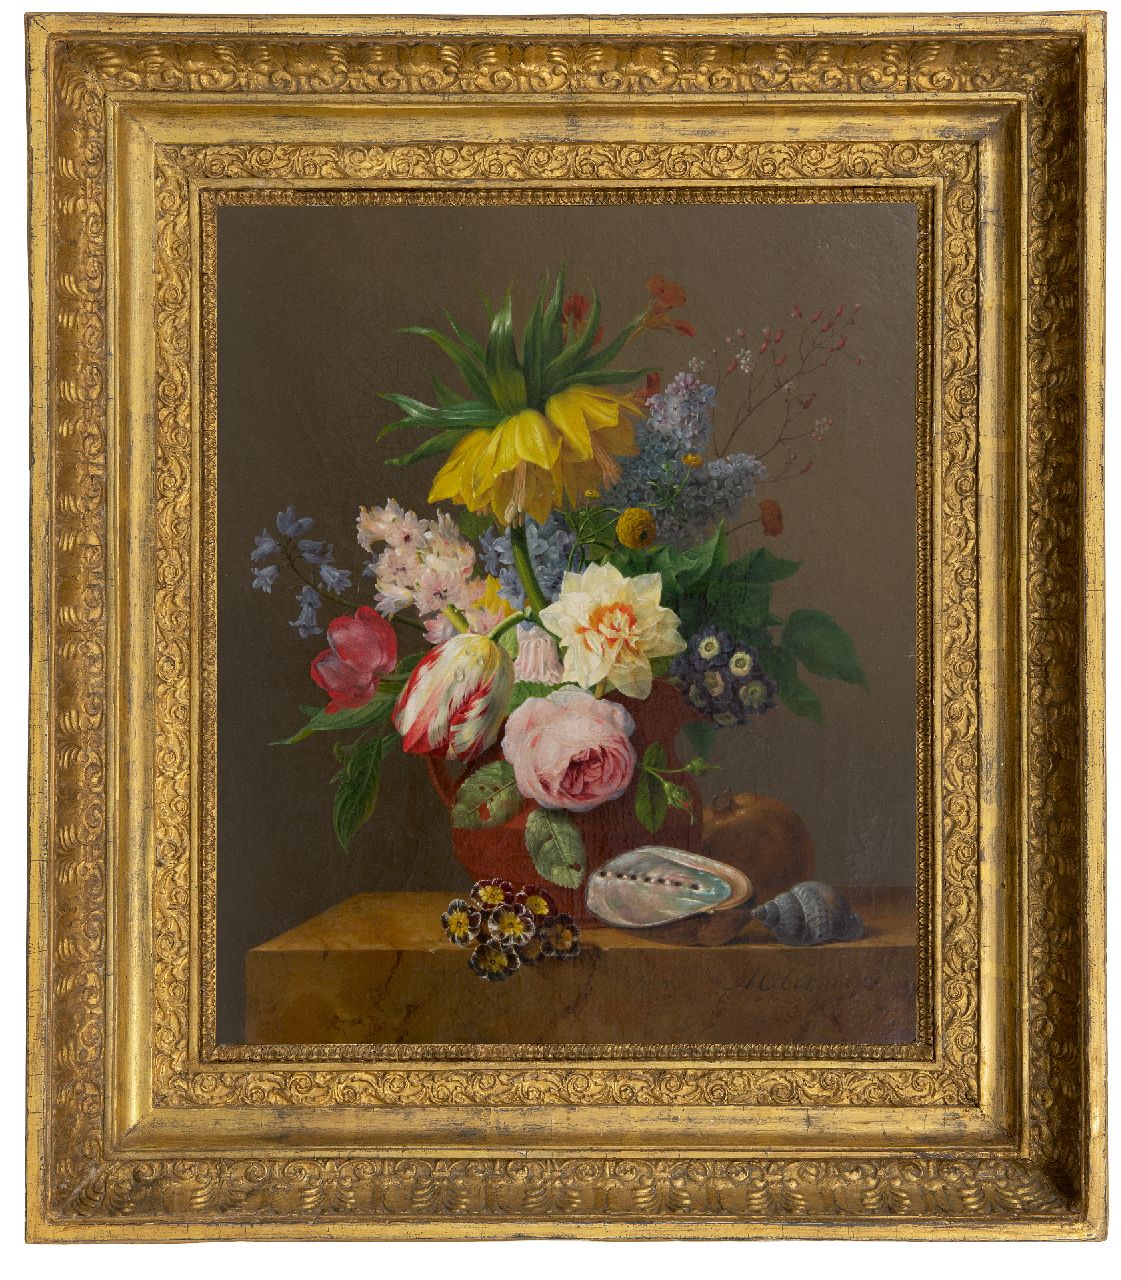 Oberman A.  | Anthony Oberman | Schilderijen te koop aangeboden | Stilleven met bloemen, granaatappel en schelpen op een marmeren plint, olieverf op doek 47,0 x 39,5 cm, gesigneerd rechtsonder